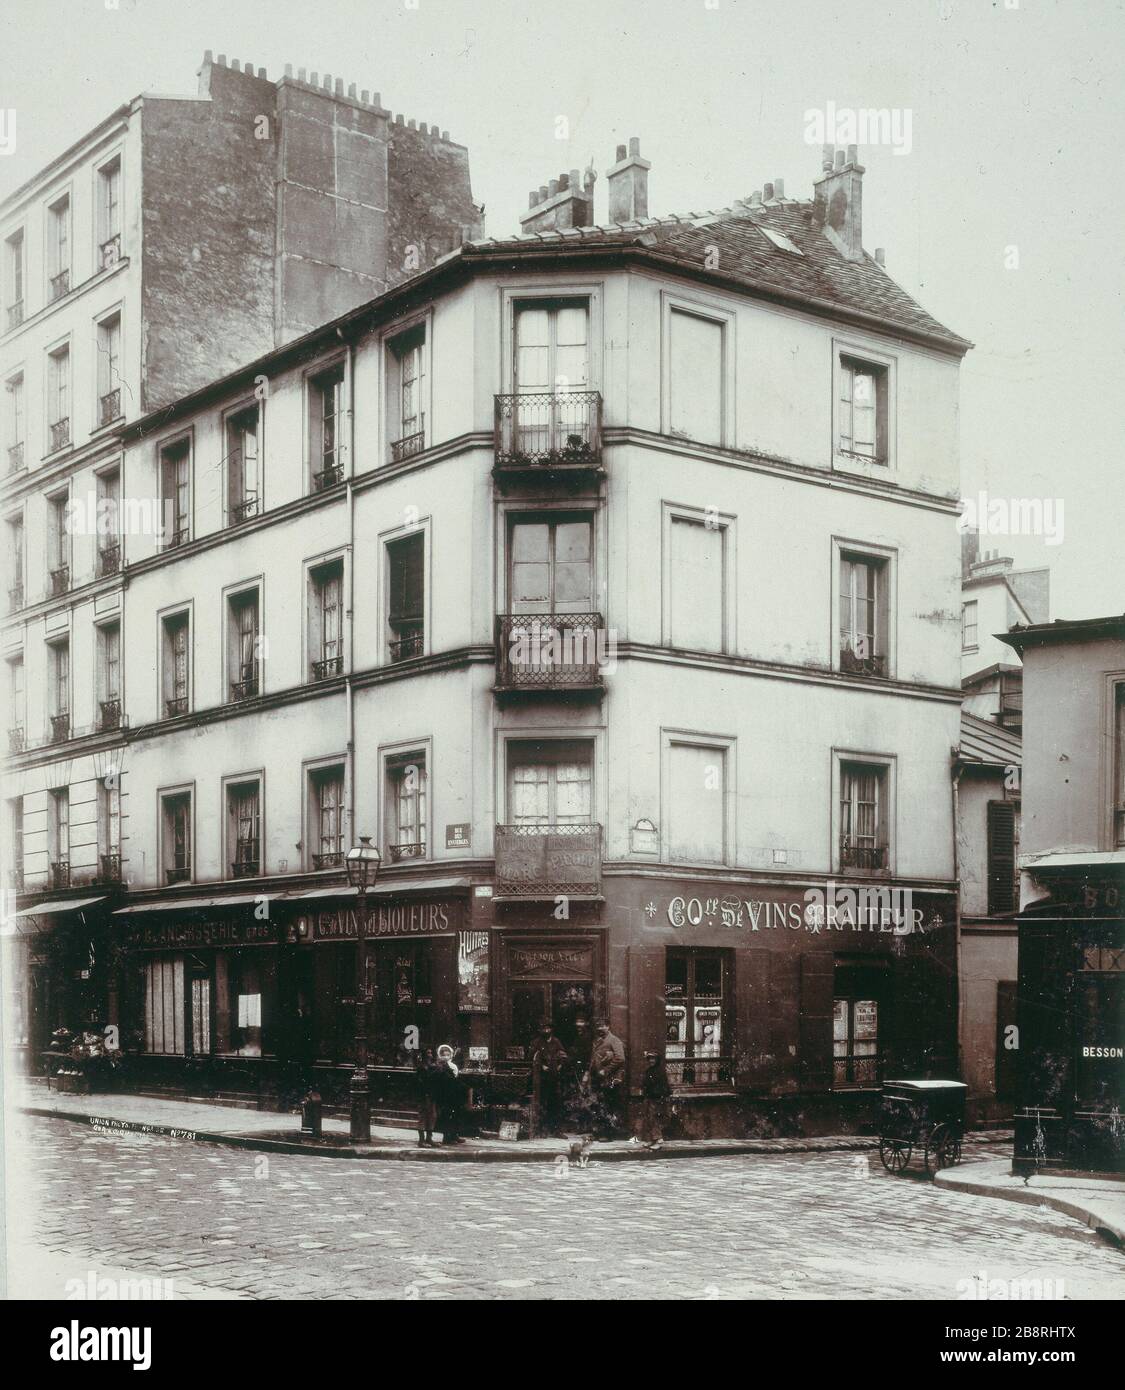 4 RUE DES Envierges 4, rue des Envierges, de la rue Piat. Paris (XXème arr.). Union Photographique Française, vers 1895. Paris, musée Carnavalet. Stock Photo